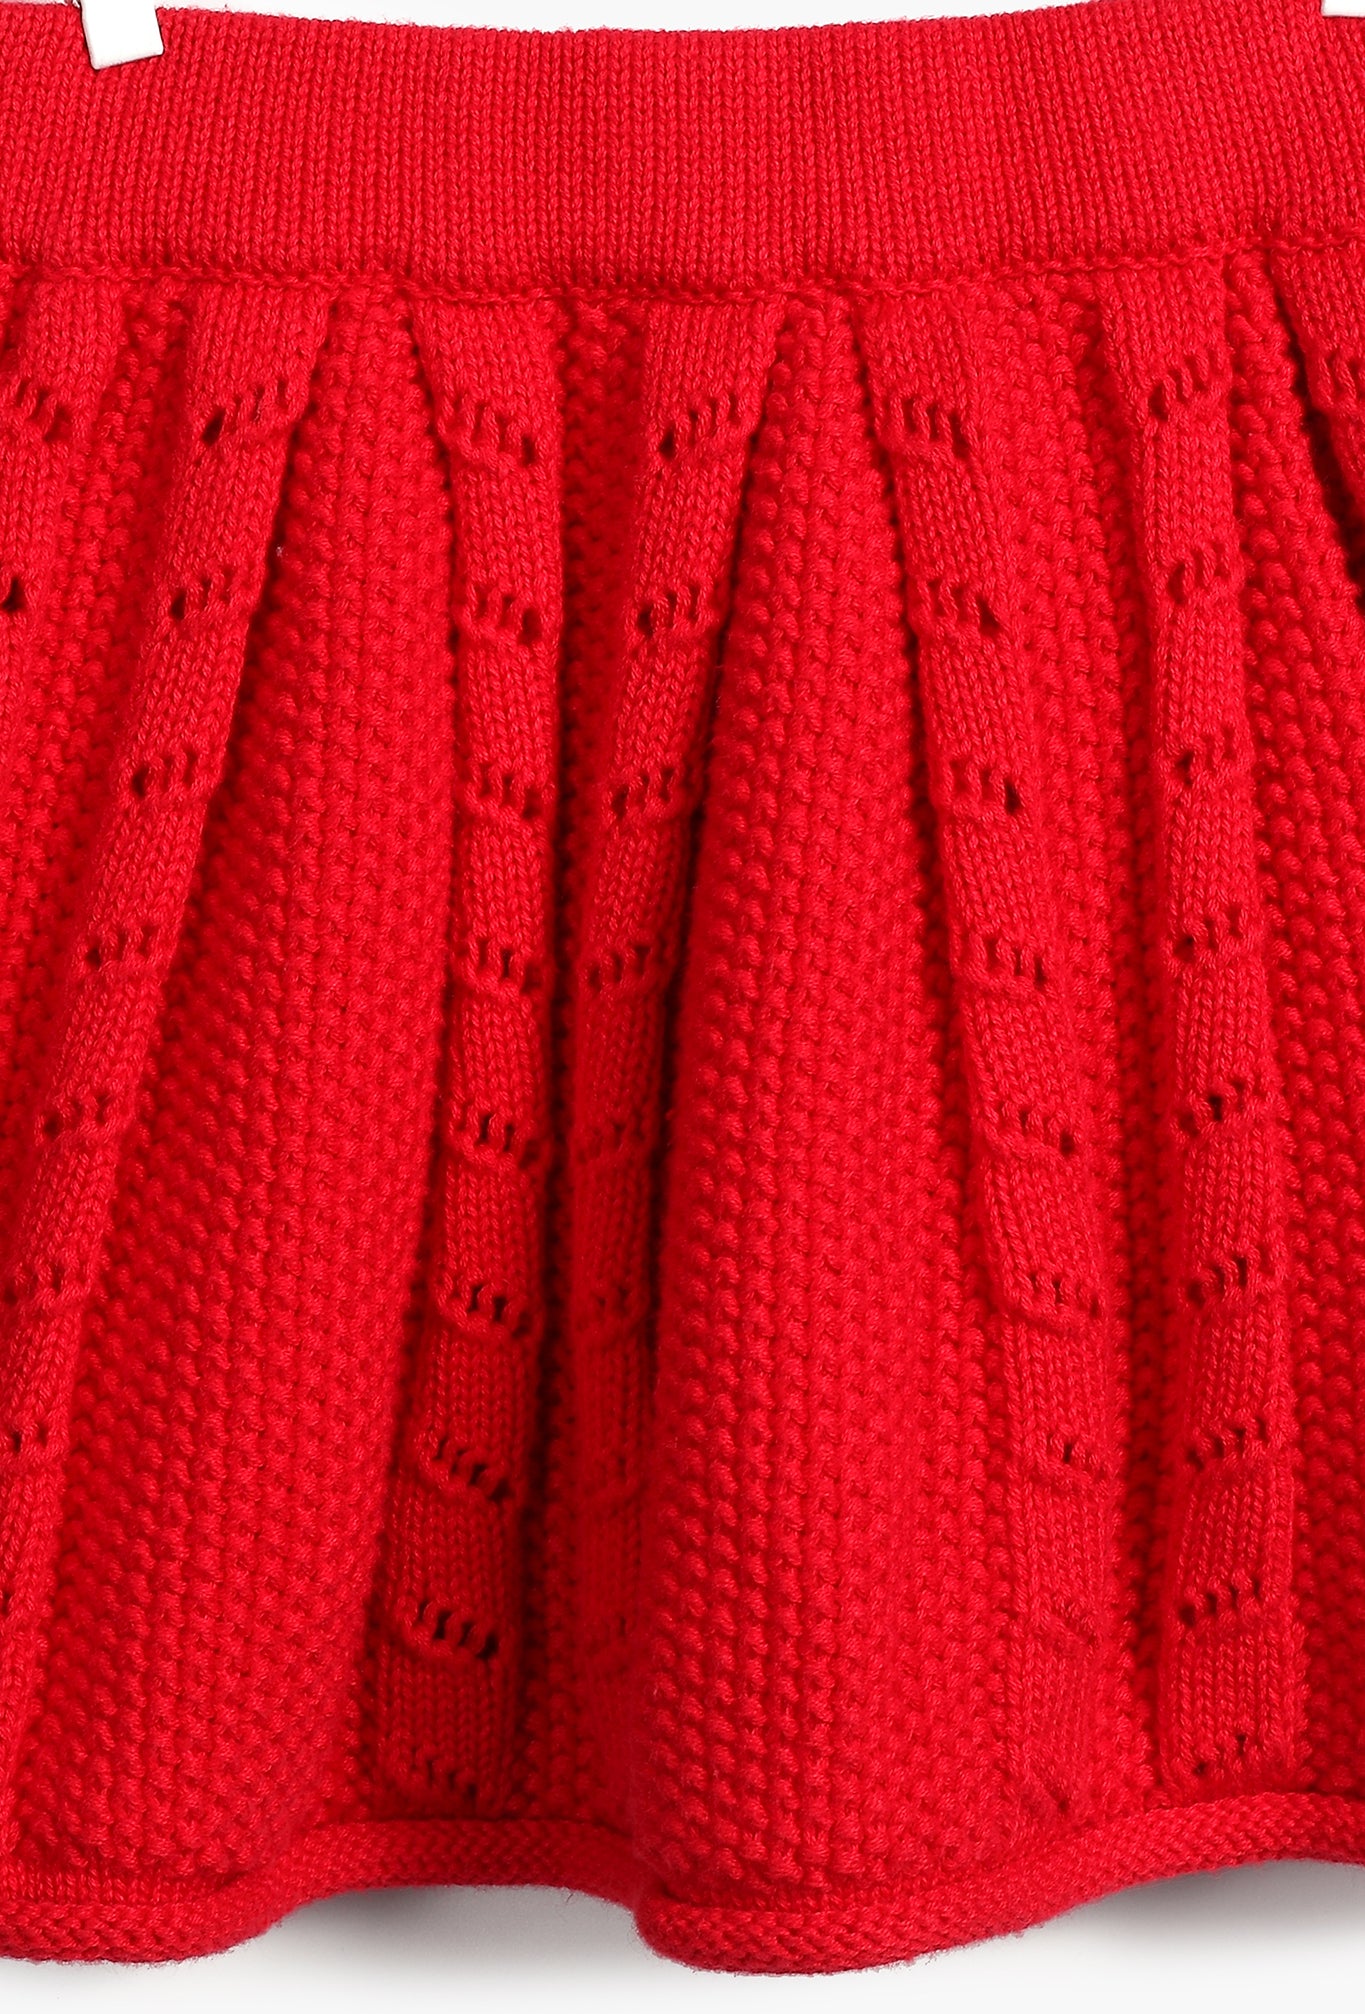 Red Braids Skirt for Baby Girl